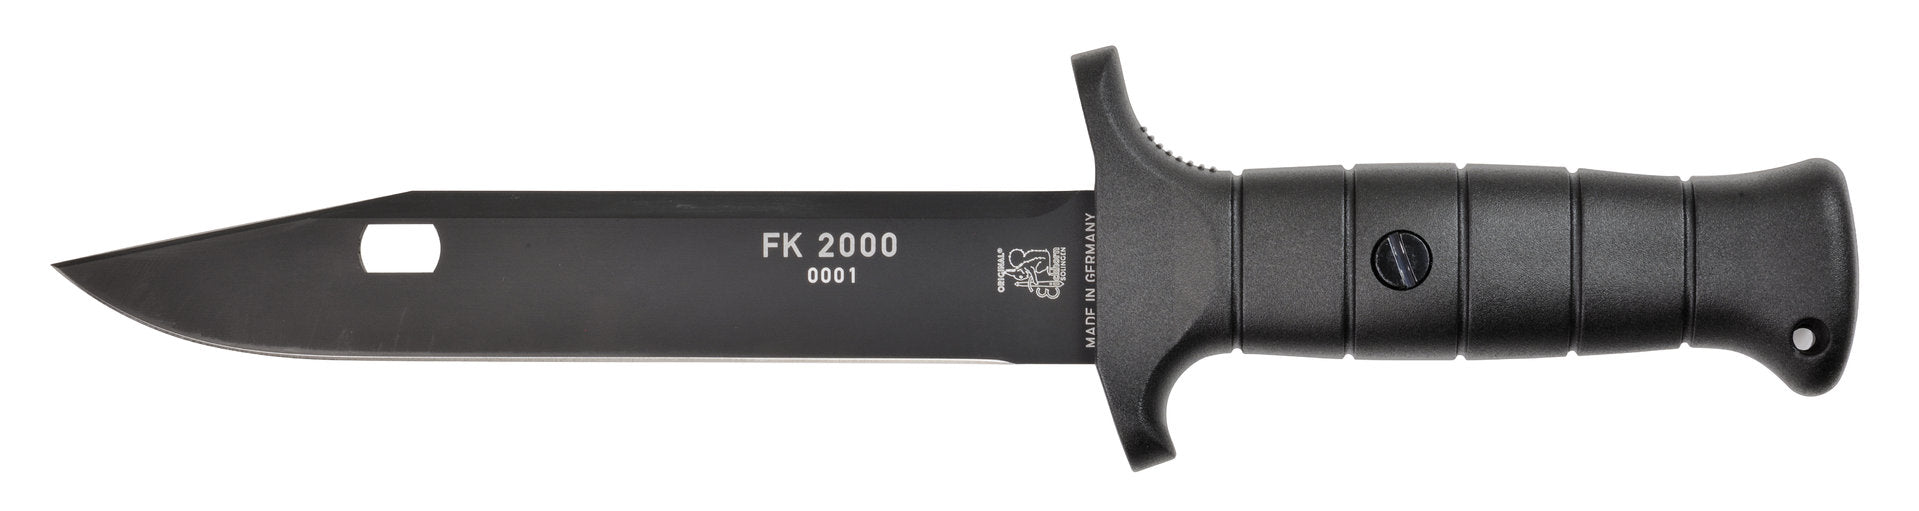 Cuchillo de campo FK 2000